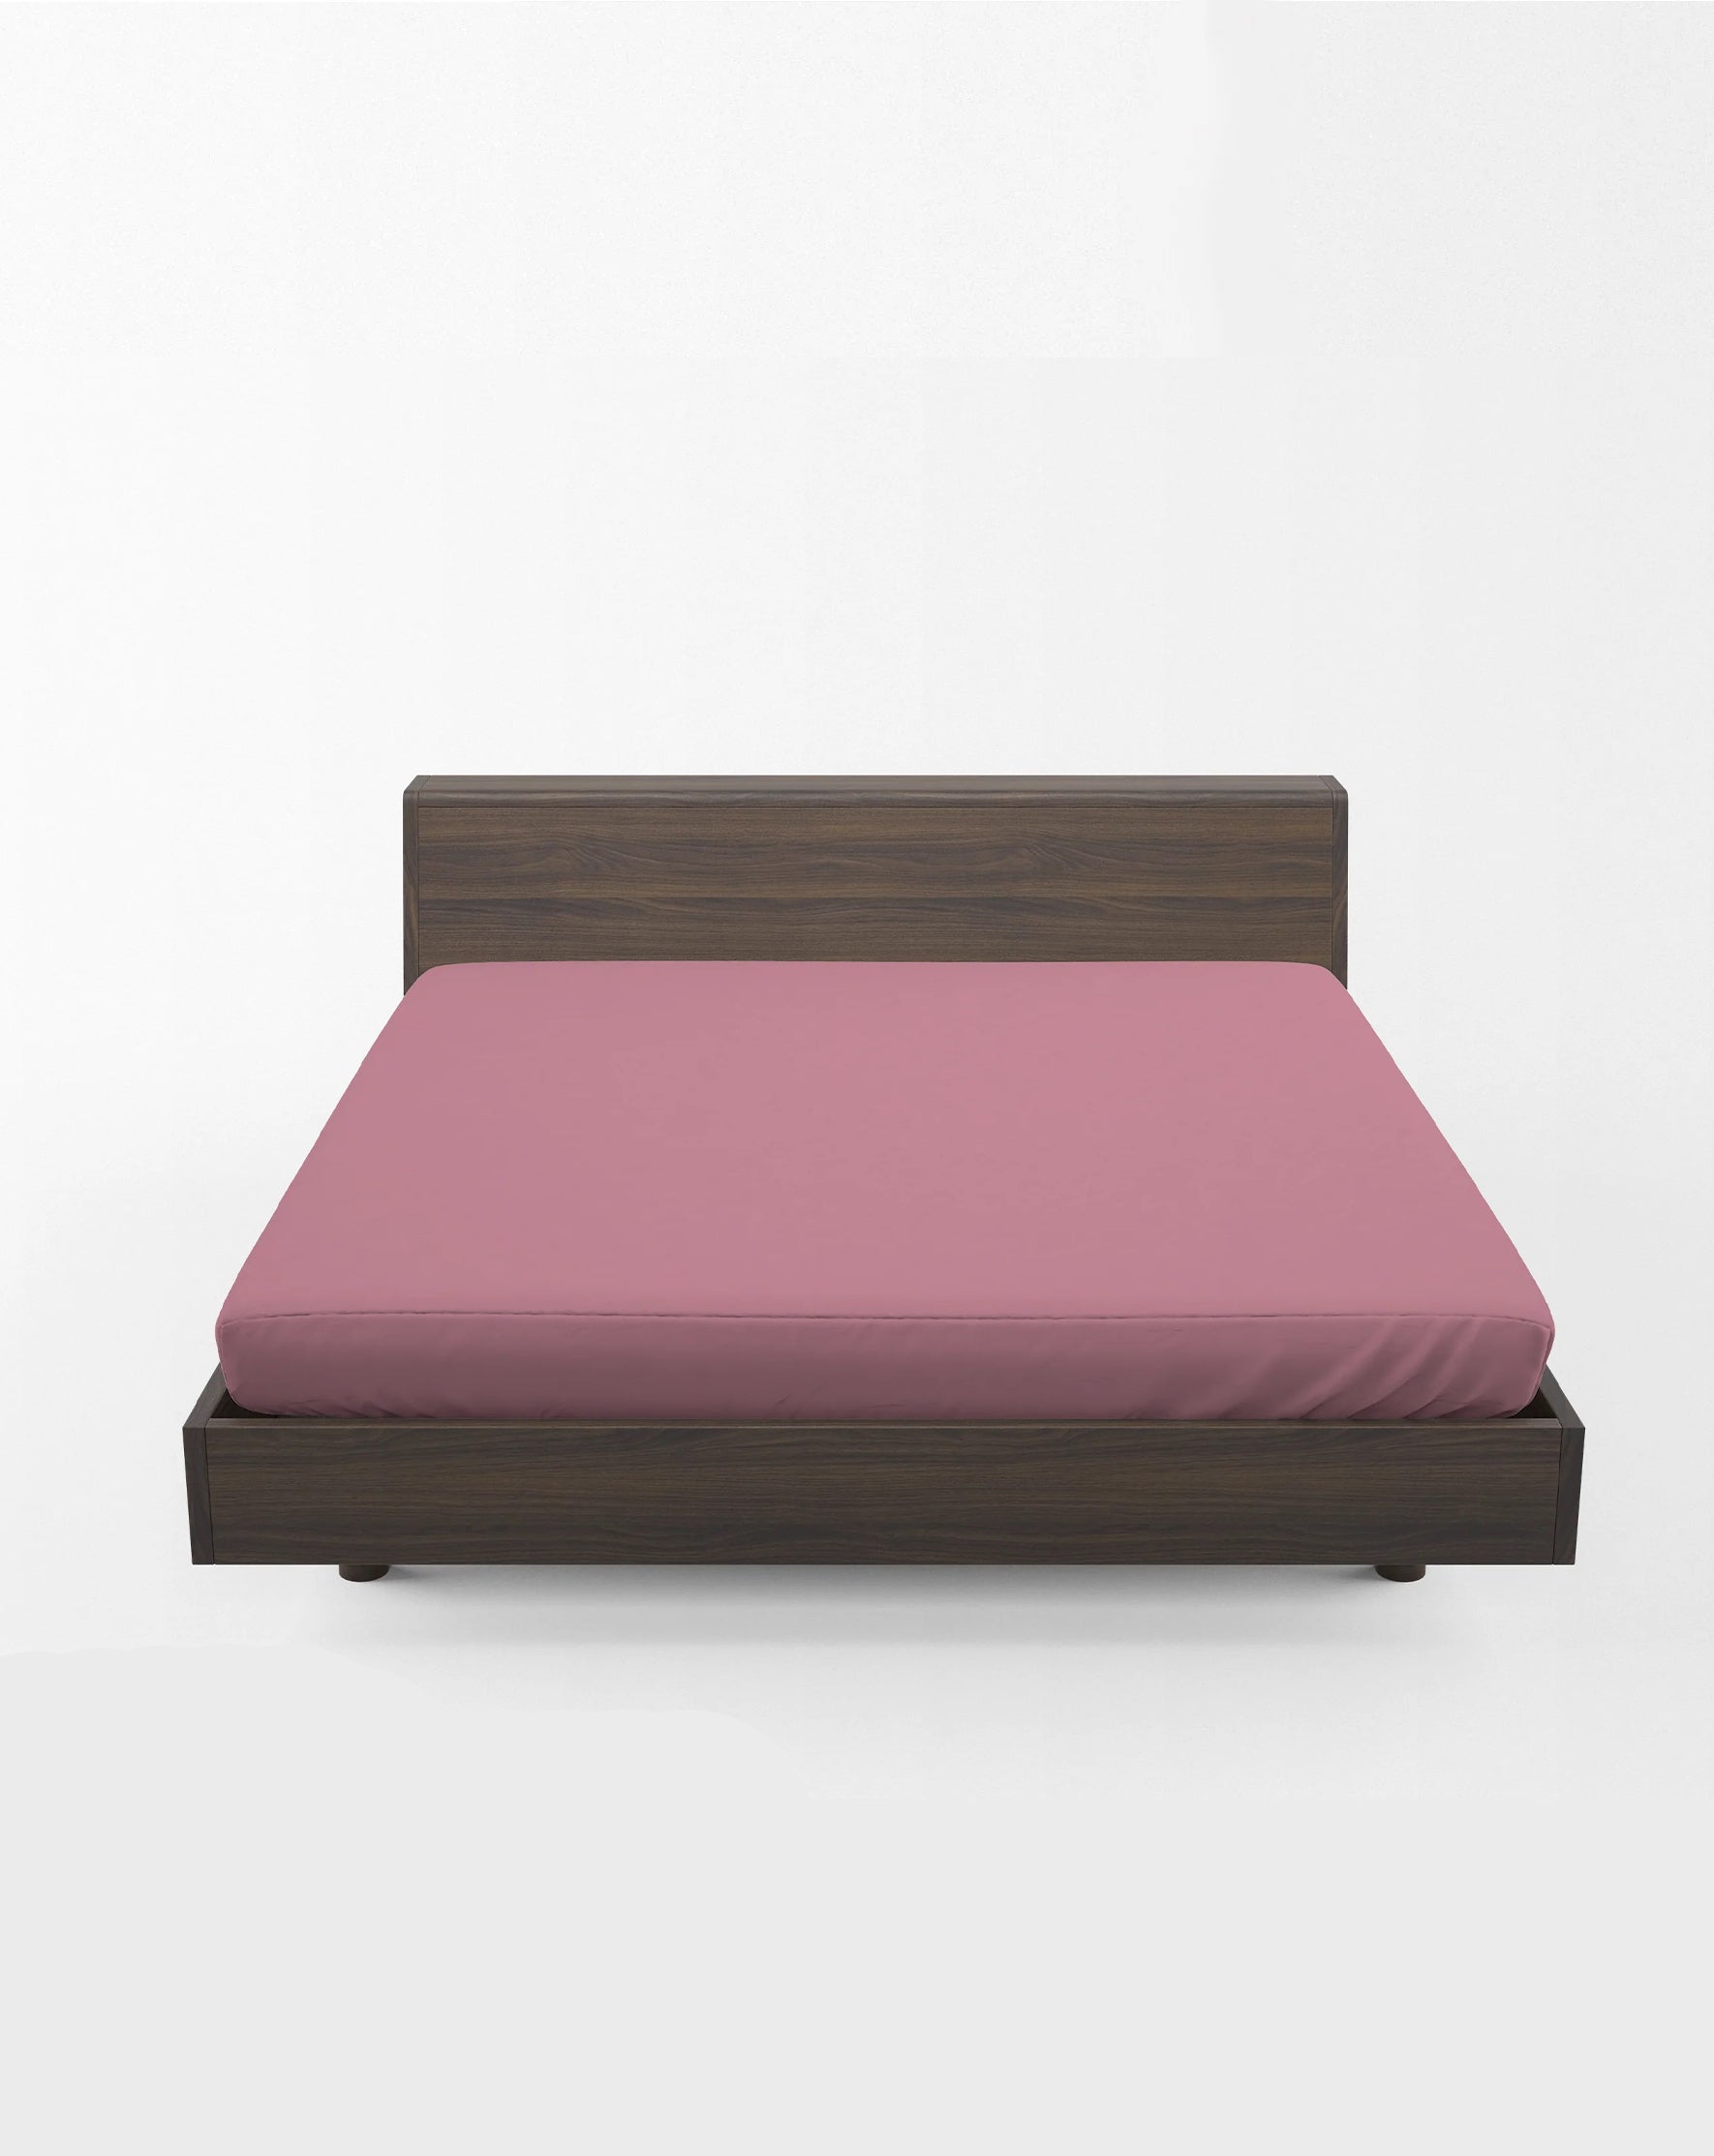 Flat Bed Sheet - Dyed - Rose Pink - King